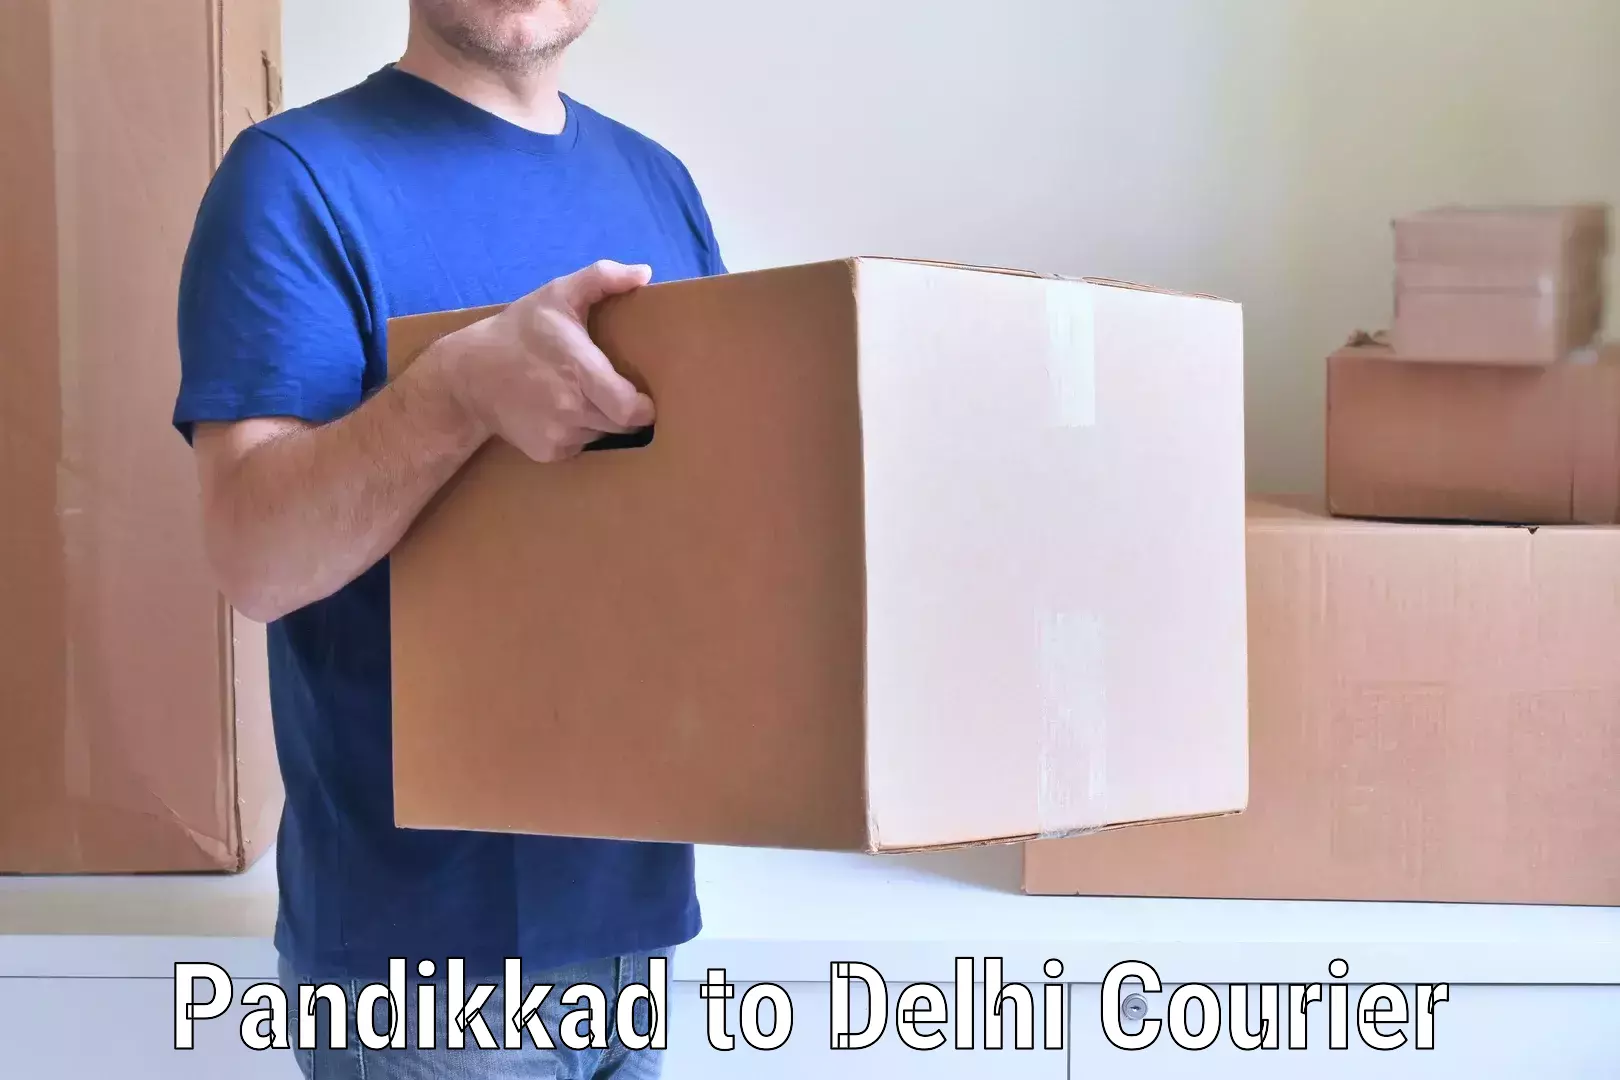 Stress-free furniture moving in Pandikkad to Ashok Vihar